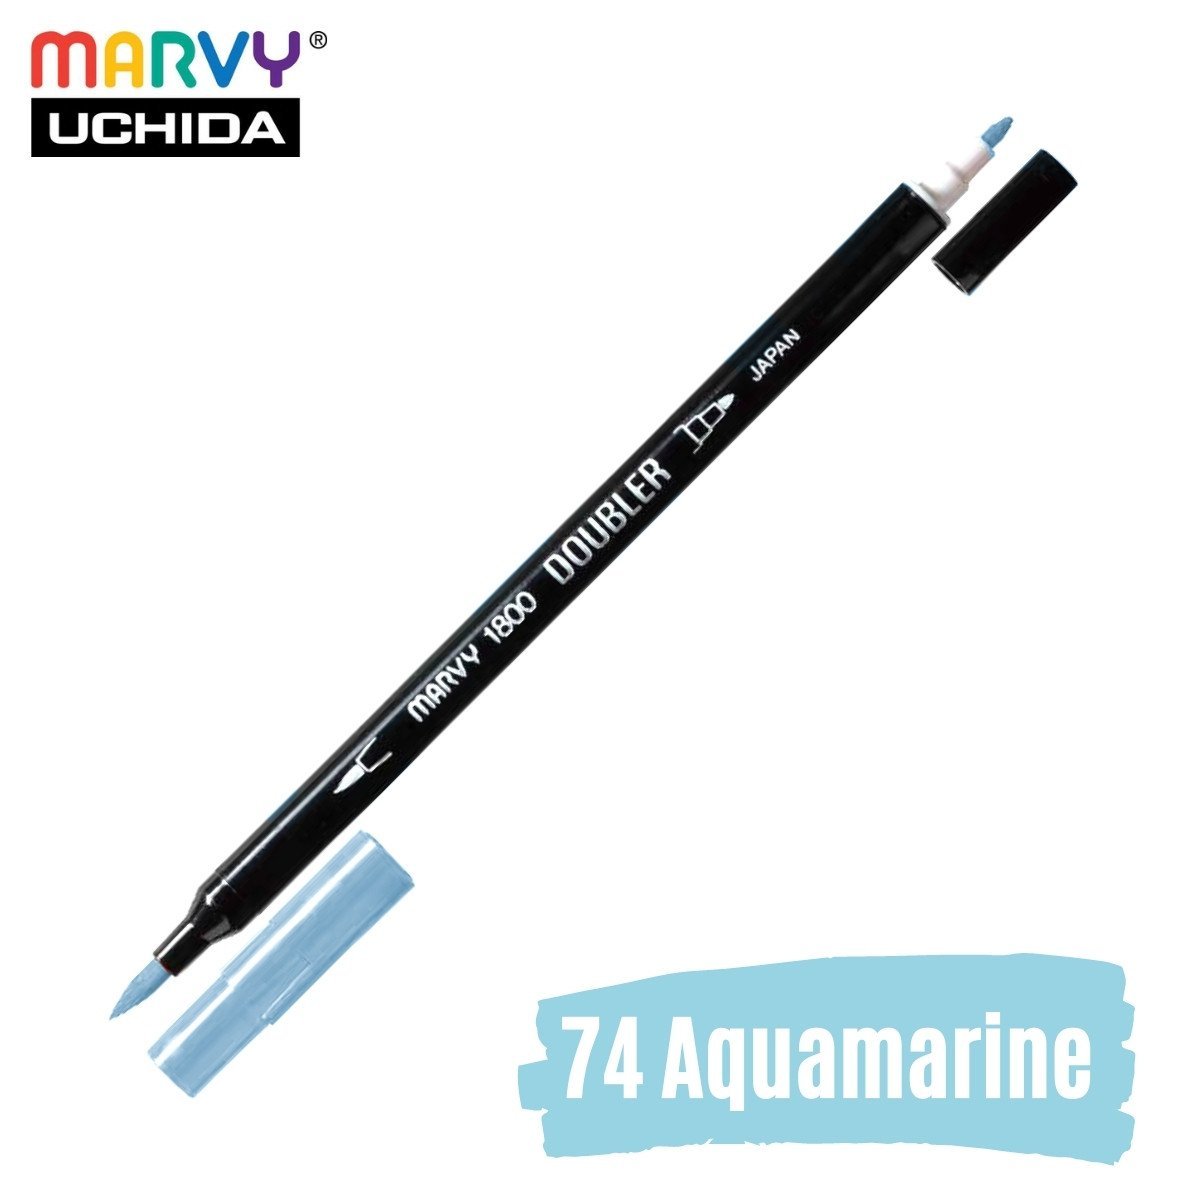 Marvy Artist Brush Pen 1800 Çift Taraflı Firça Uçlu Kalem 74 Aquamarine